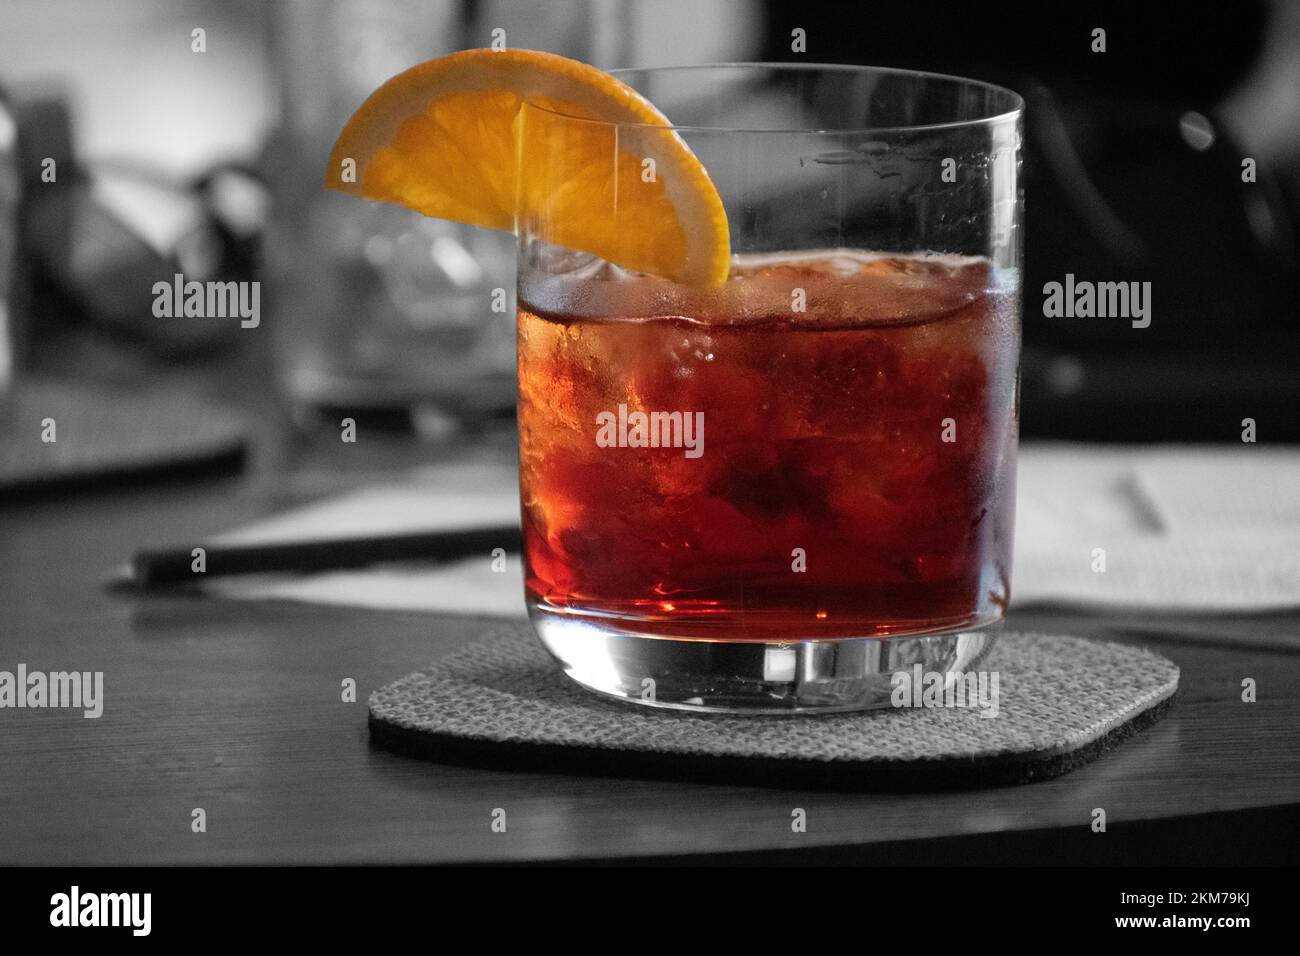 Farbenfroher roter Cocktail auf Eis mit einem Stück Orange am Glasrand. Stockfoto